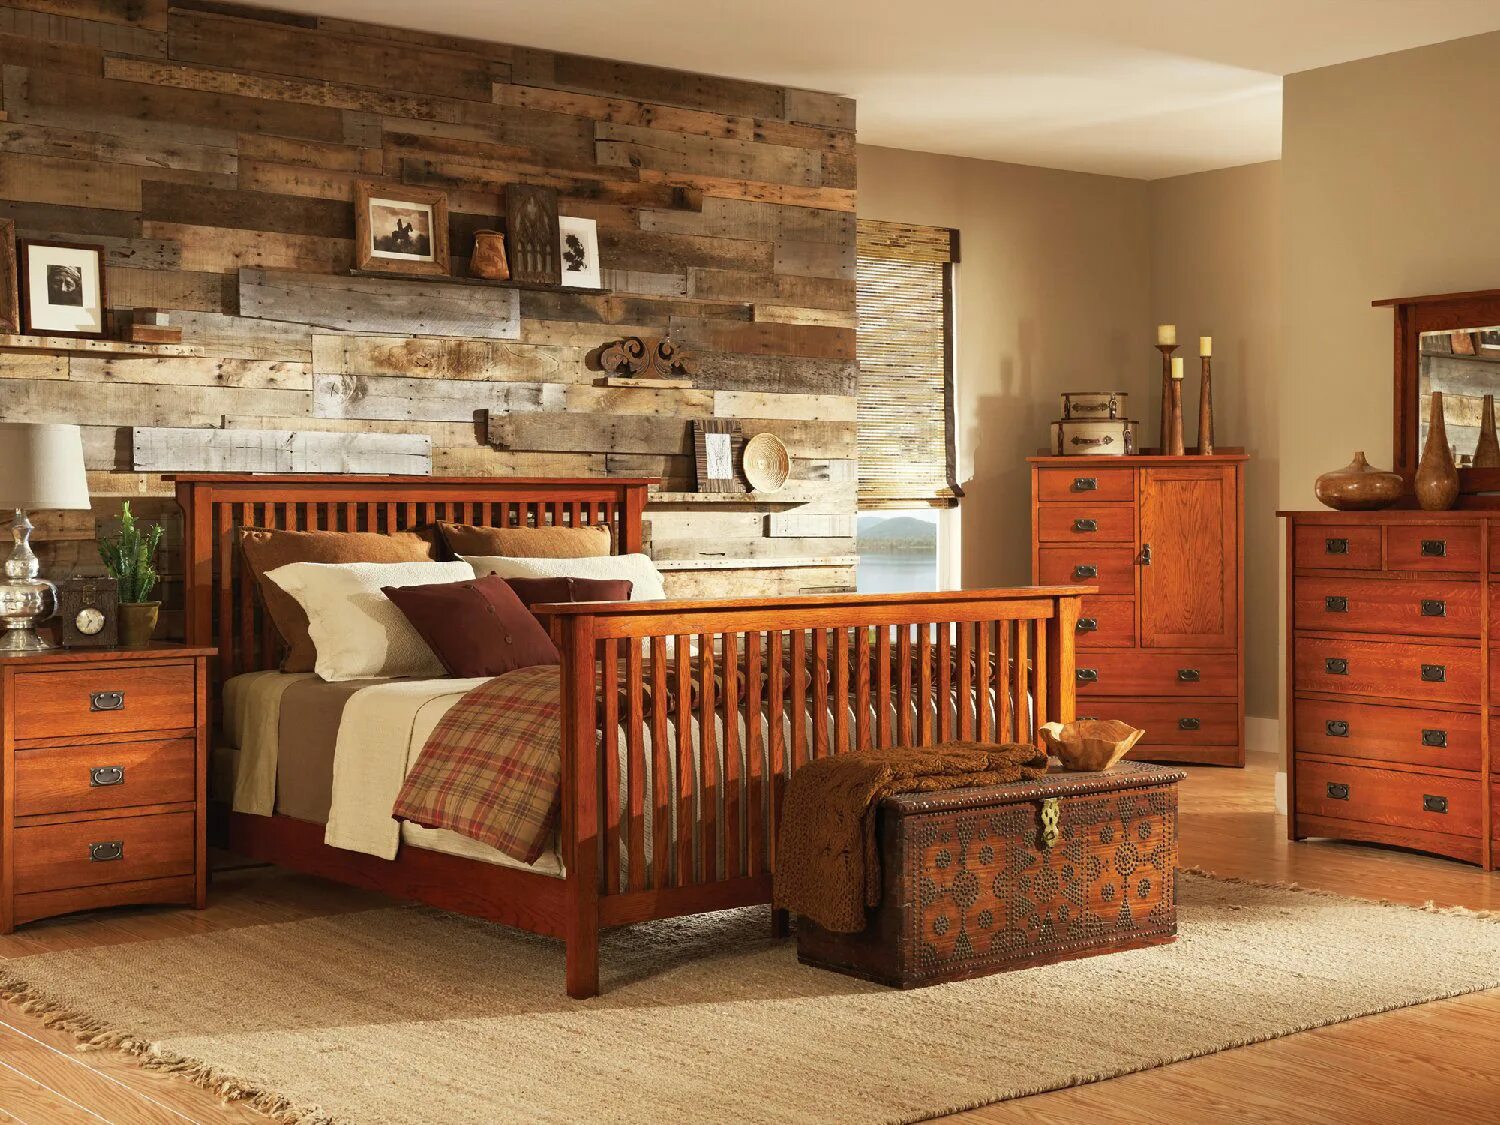 Комната с деревянной мебелью. Деревянная мебель в интерьере. Спальня из дерева. Спальня с деревянной мебелью. Wooden мебель